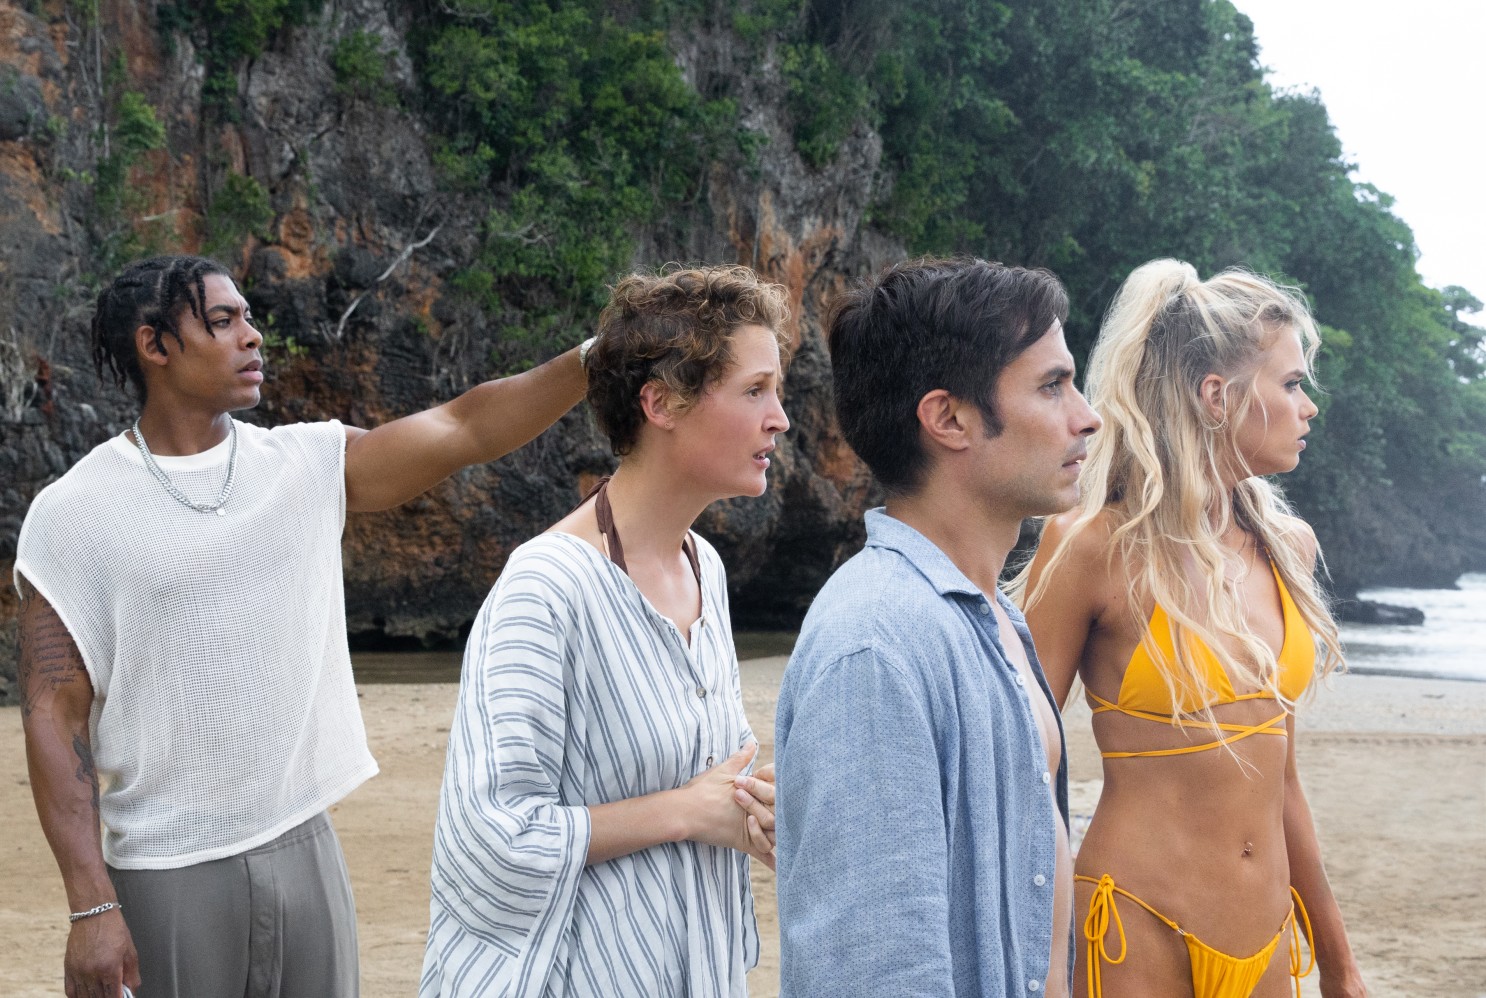 Cena do filme Tempo. A cena mostra 4 pessoas em uma praia de dia. Todos olham para o lado, em direção ao mar, com cara de medo.